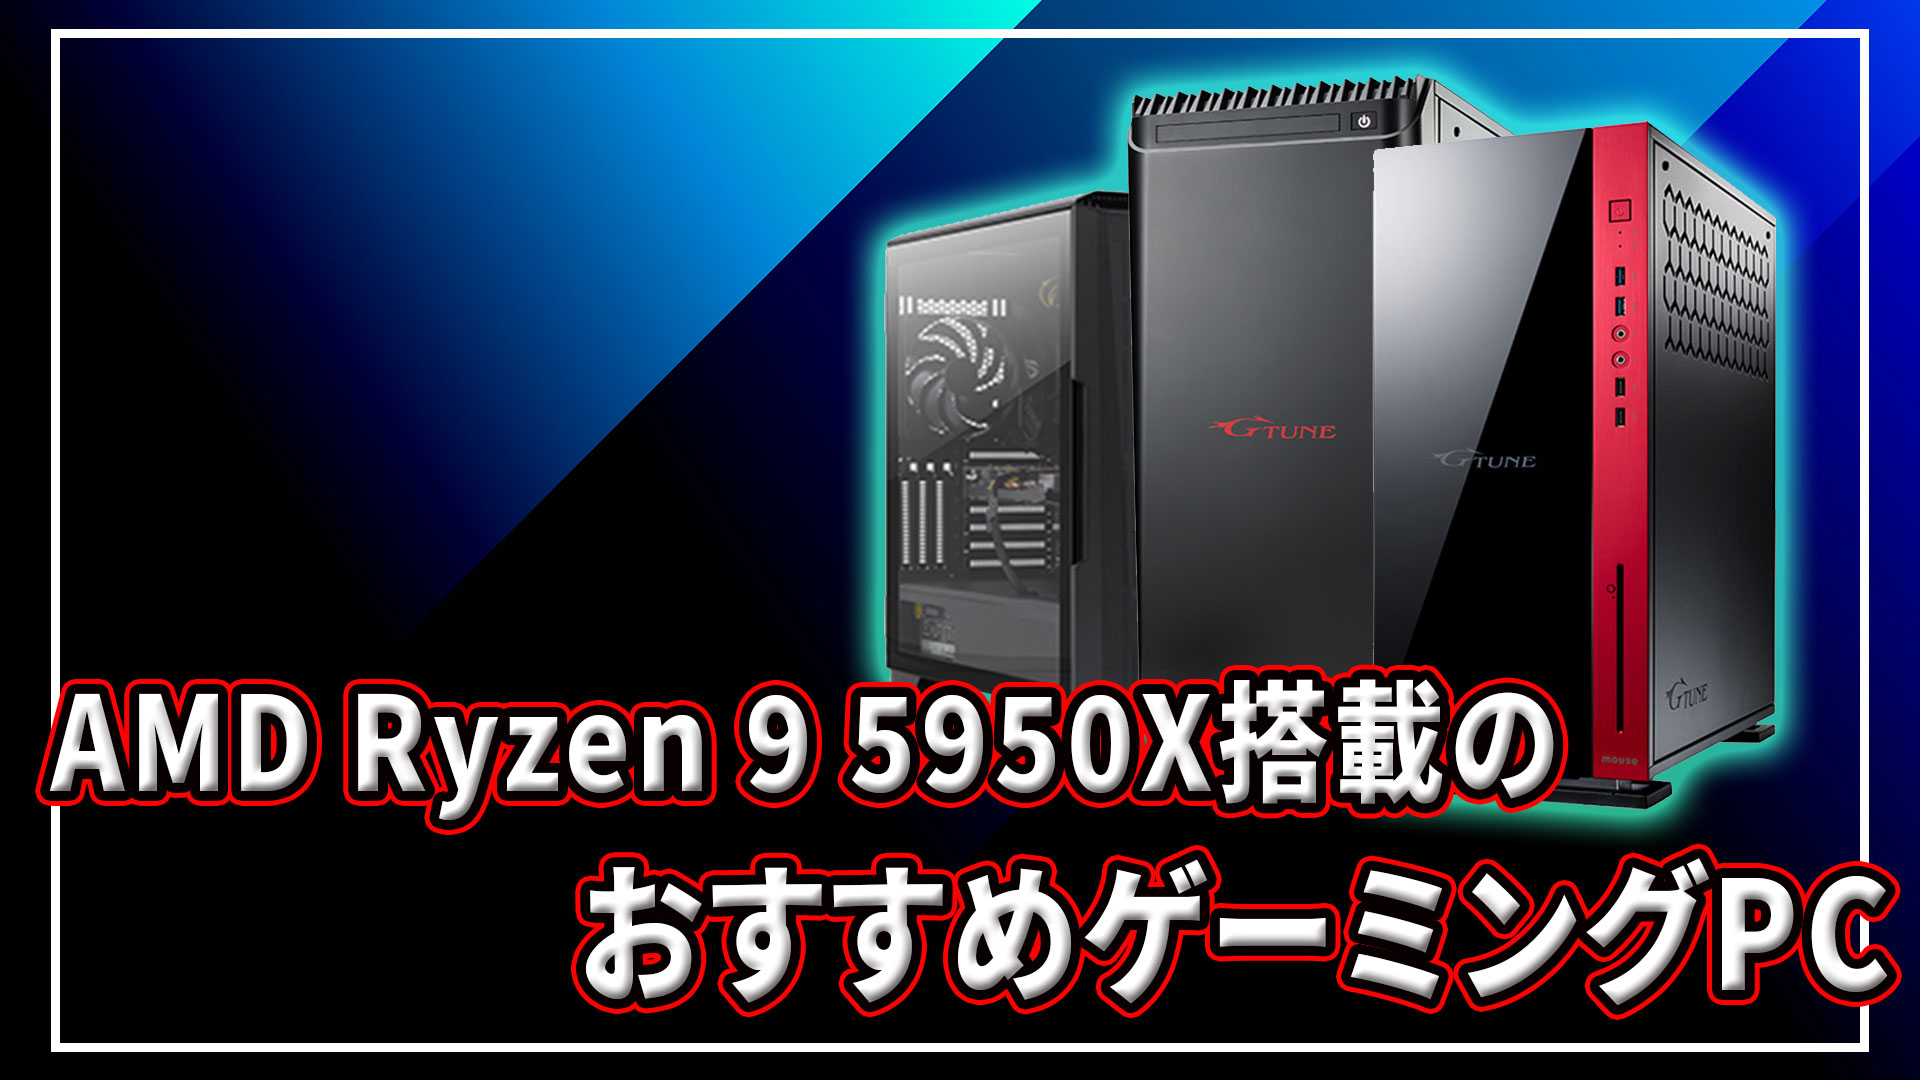 AMD Ryzen 9 5900X/5950X｣搭載のおすすめゲーミングPC4選 | あしゅらだ